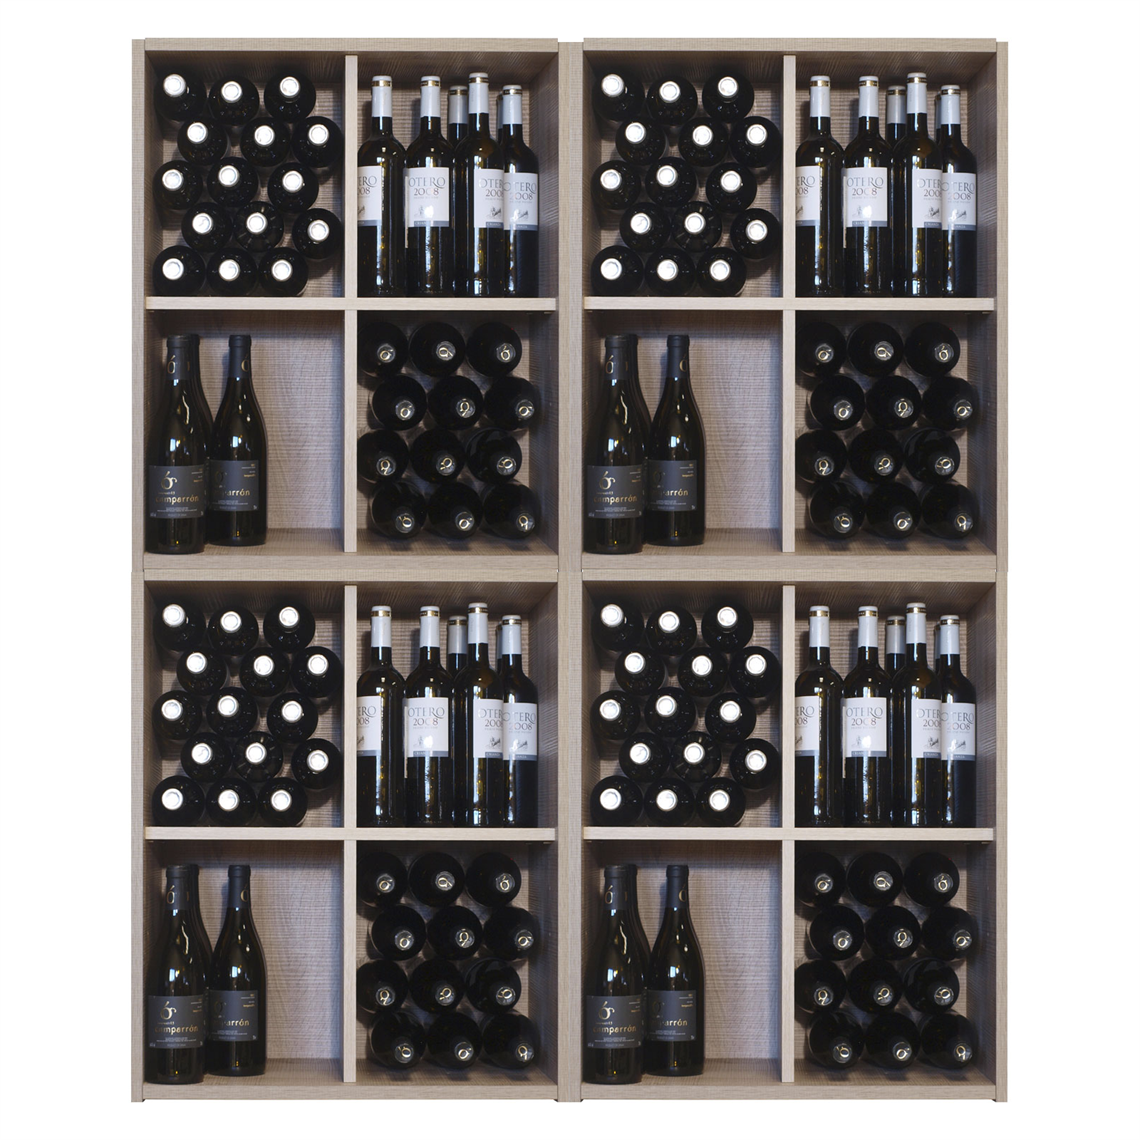 Malbec Self Assembly Series - 240 Bottle Melamine Wine Rack Kit - Rustic Oak Effect